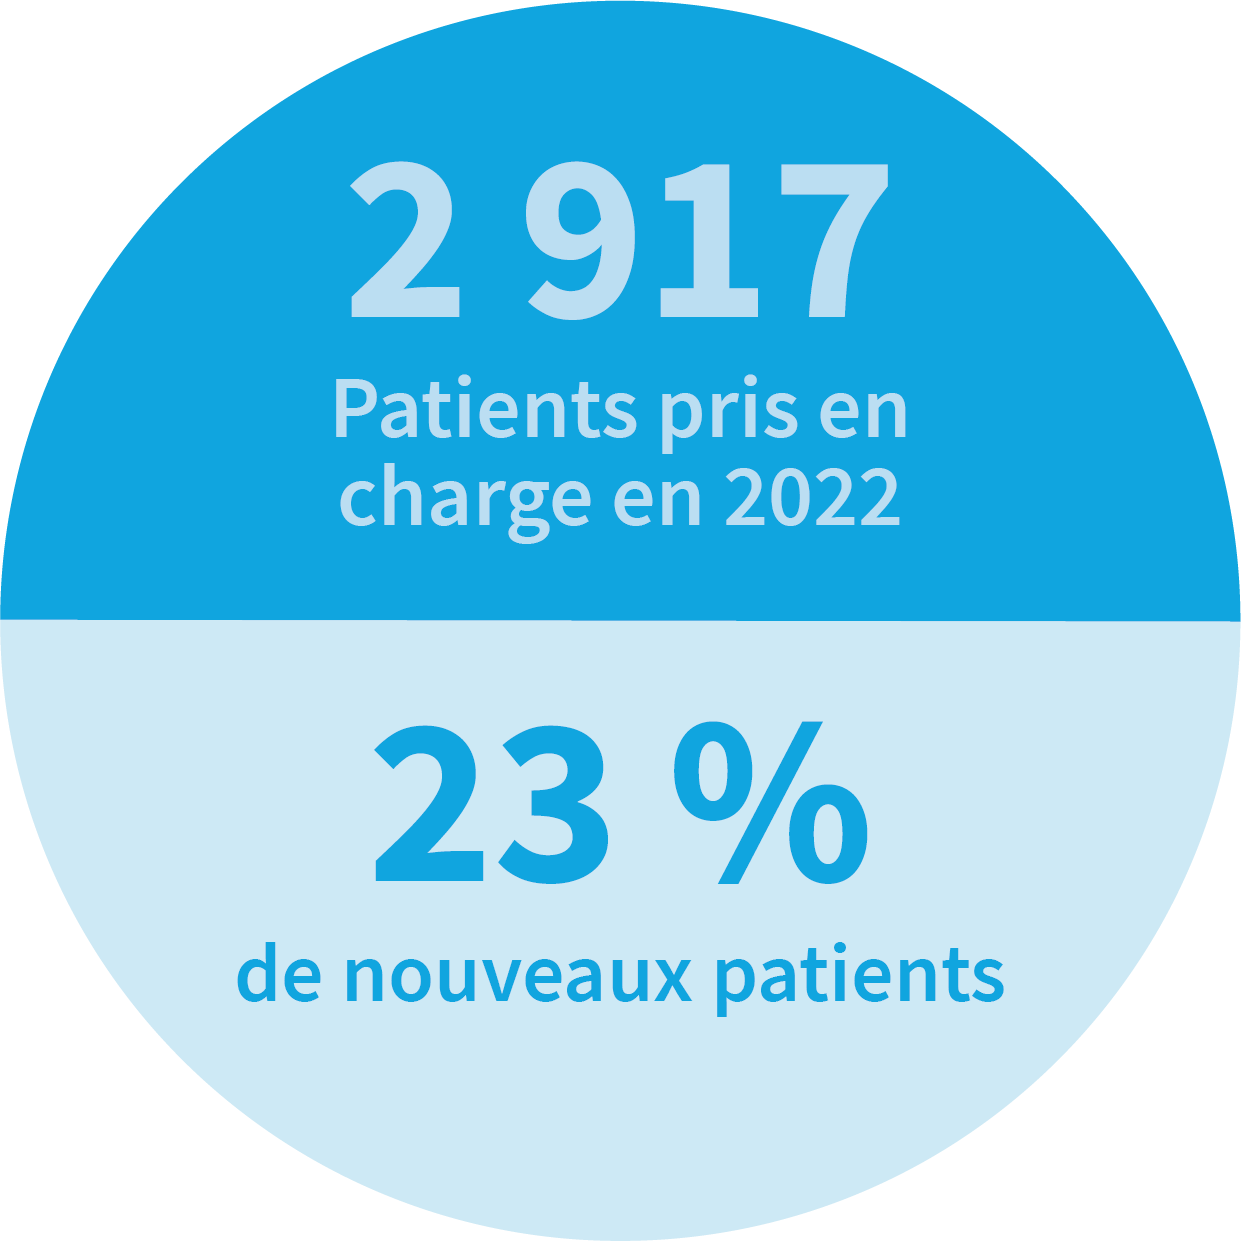 2917 patients pris en charge en 2022 et il y avait 23% de nouveaux patients